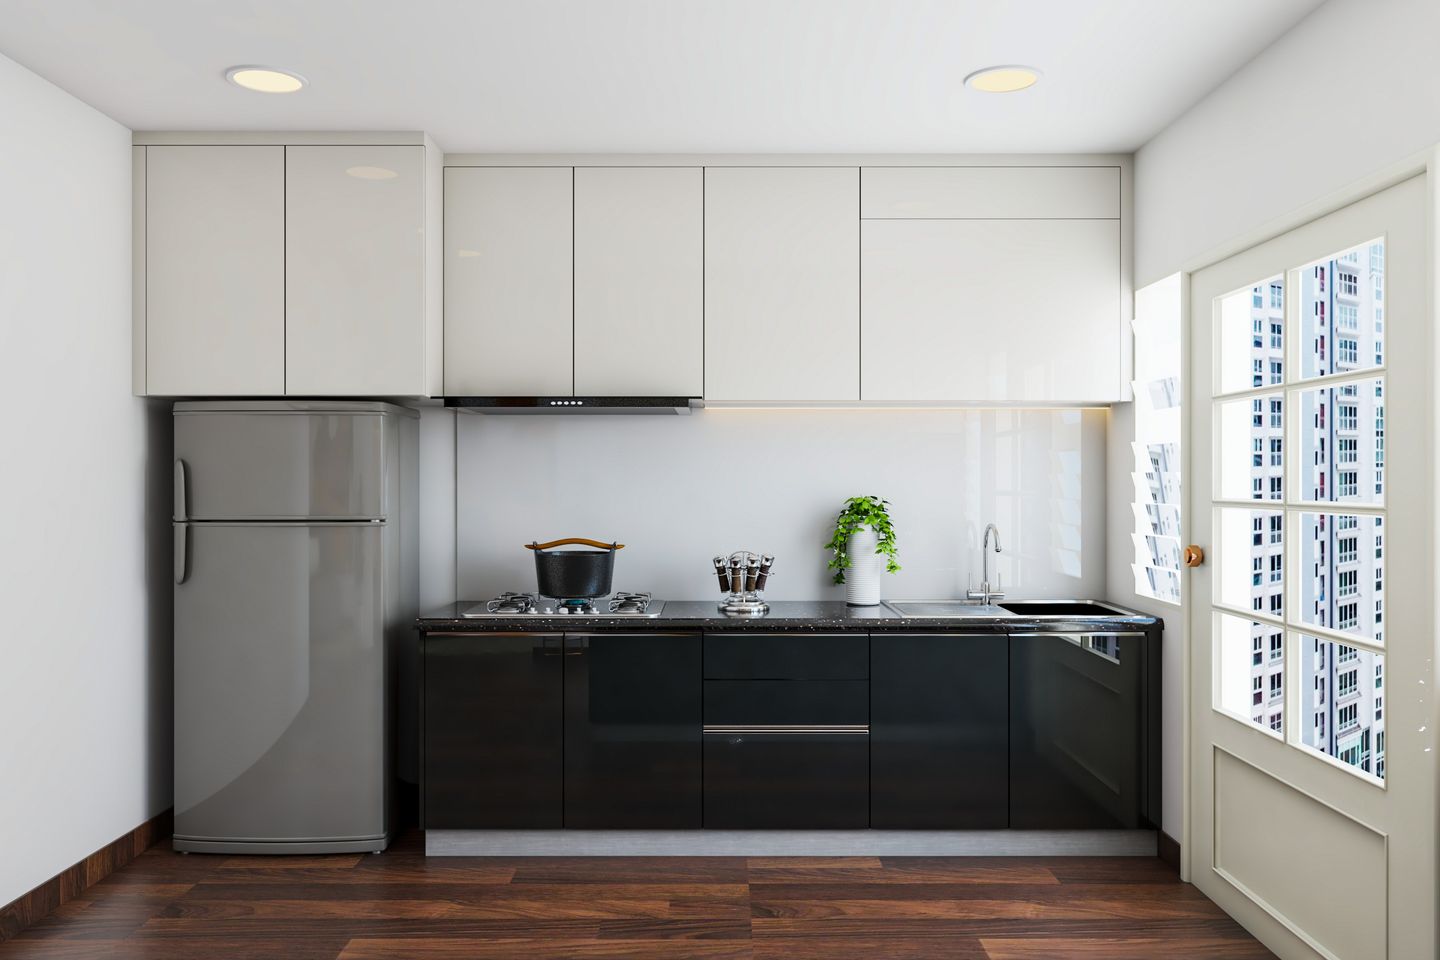 Black and White Kitchen Design with Dark Wood Flooring - Livspace